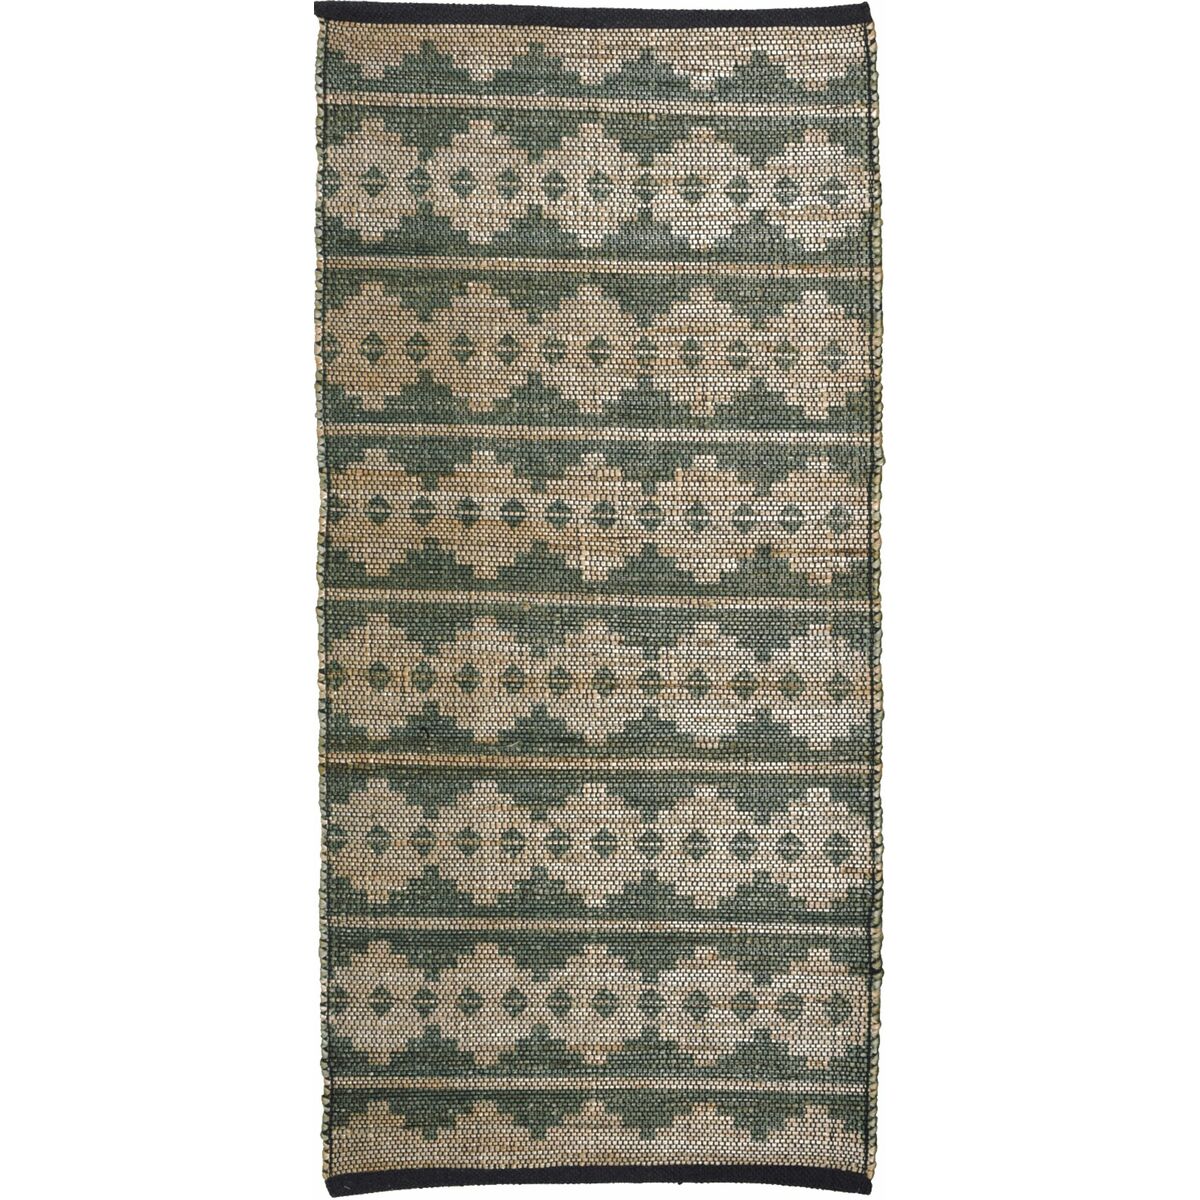 Dywan bawełniany z domieszką juty zielony 70 x 140 cm